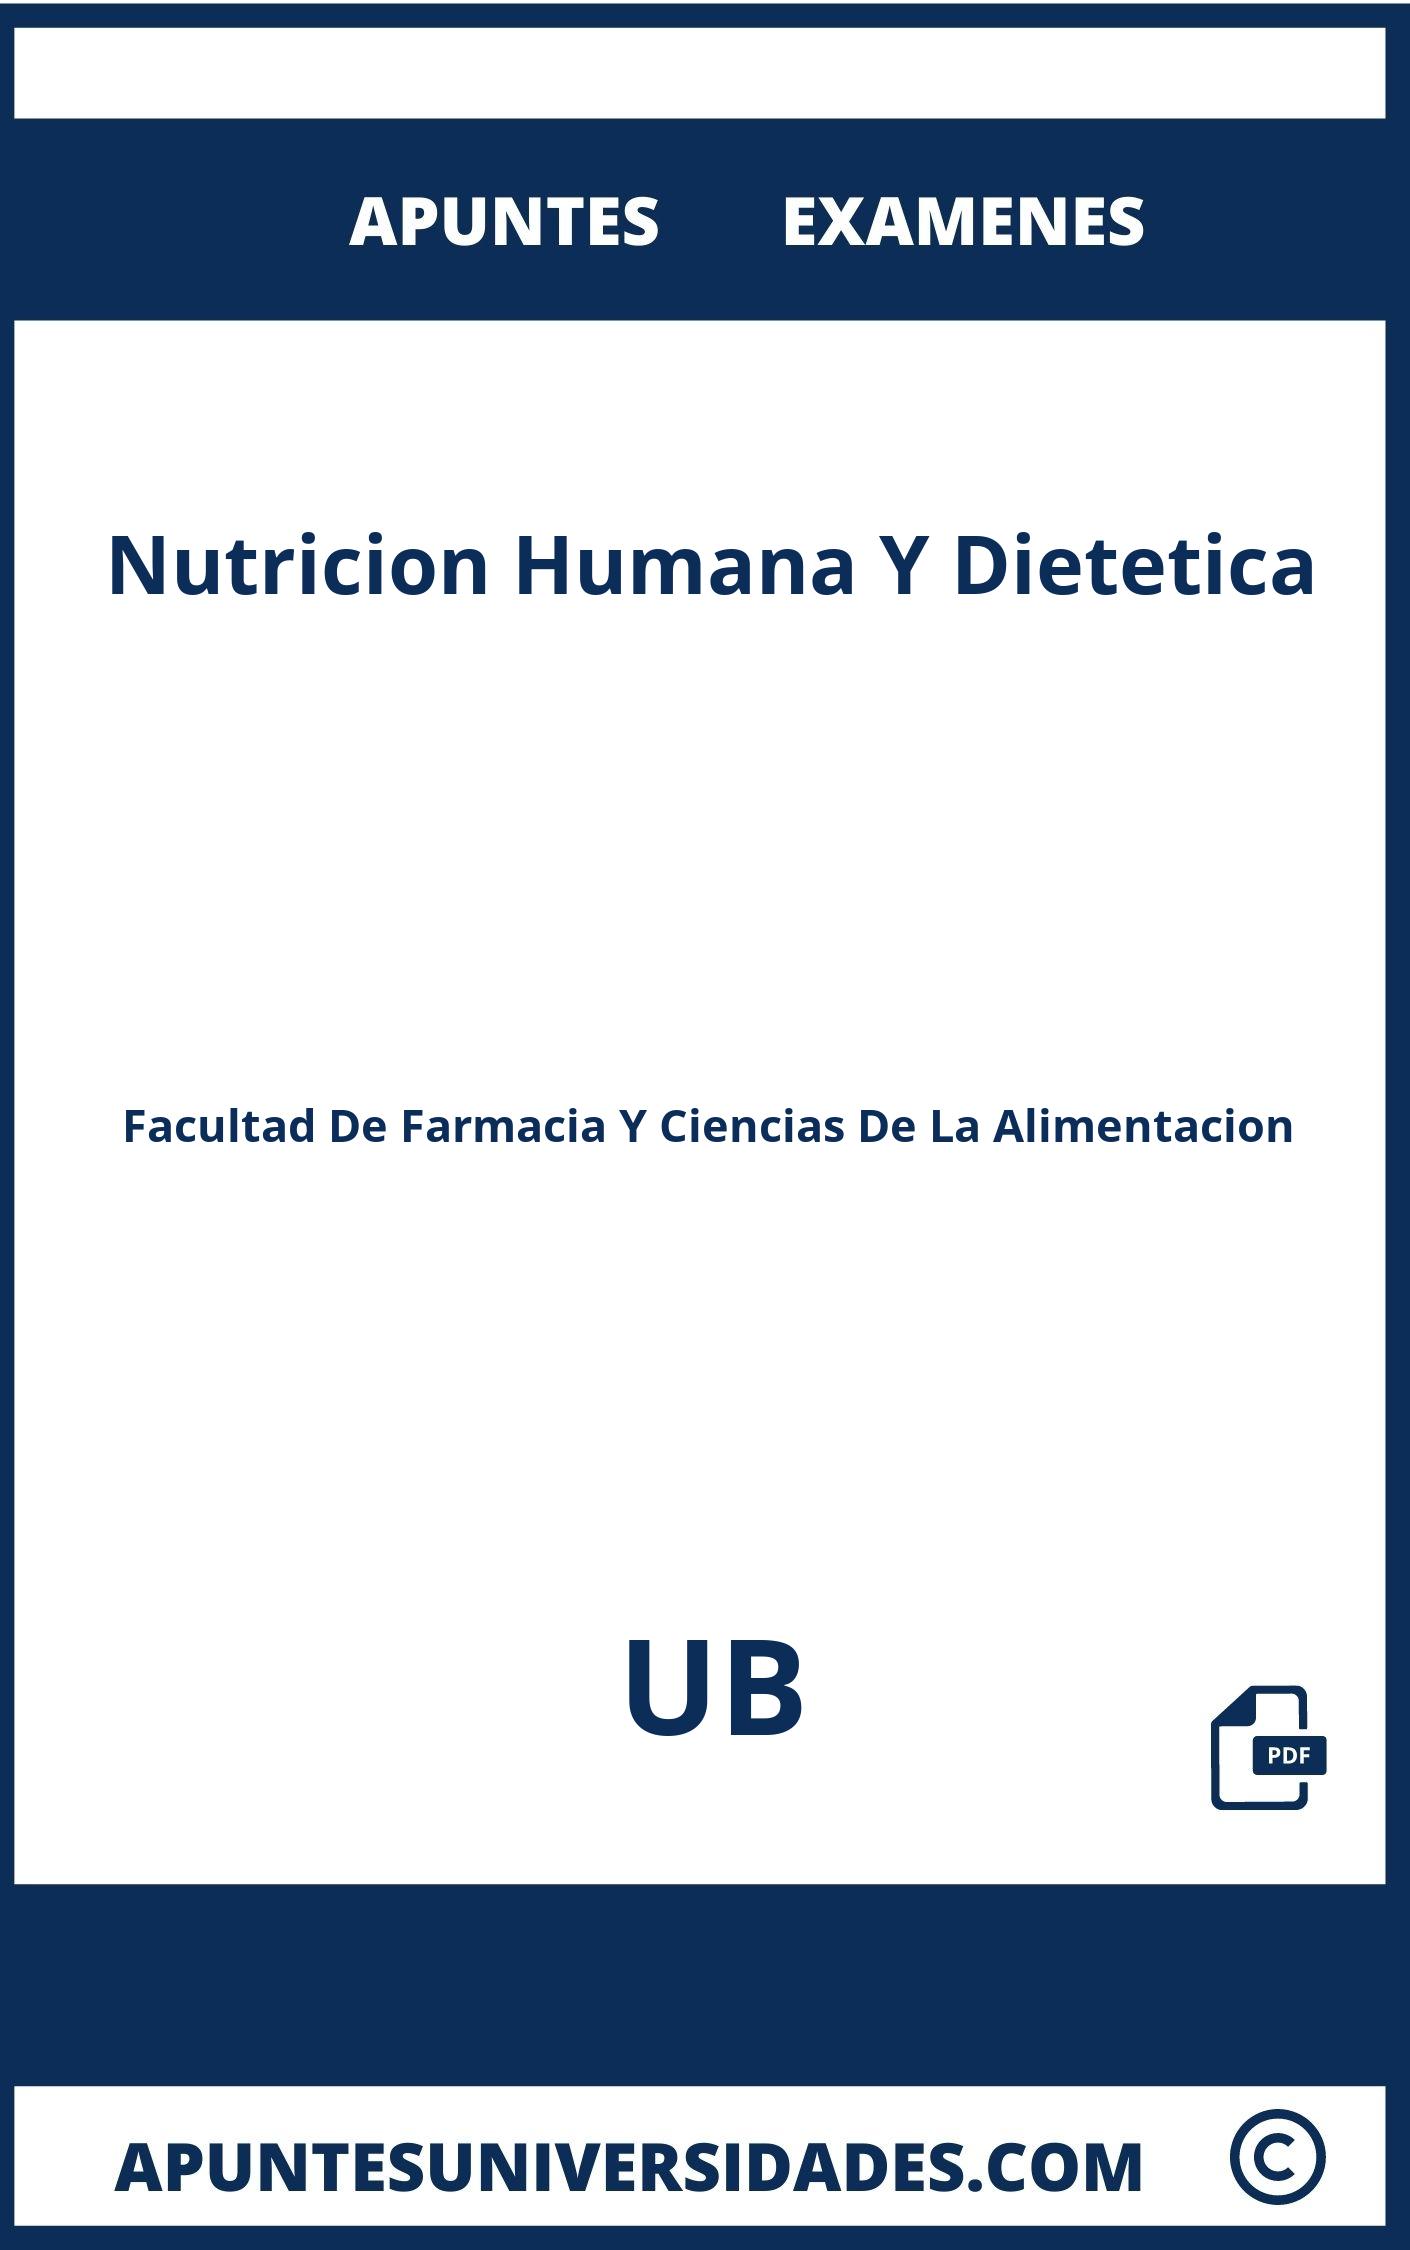 Apuntes Examenes Nutricion Humana Y Dietetica UB